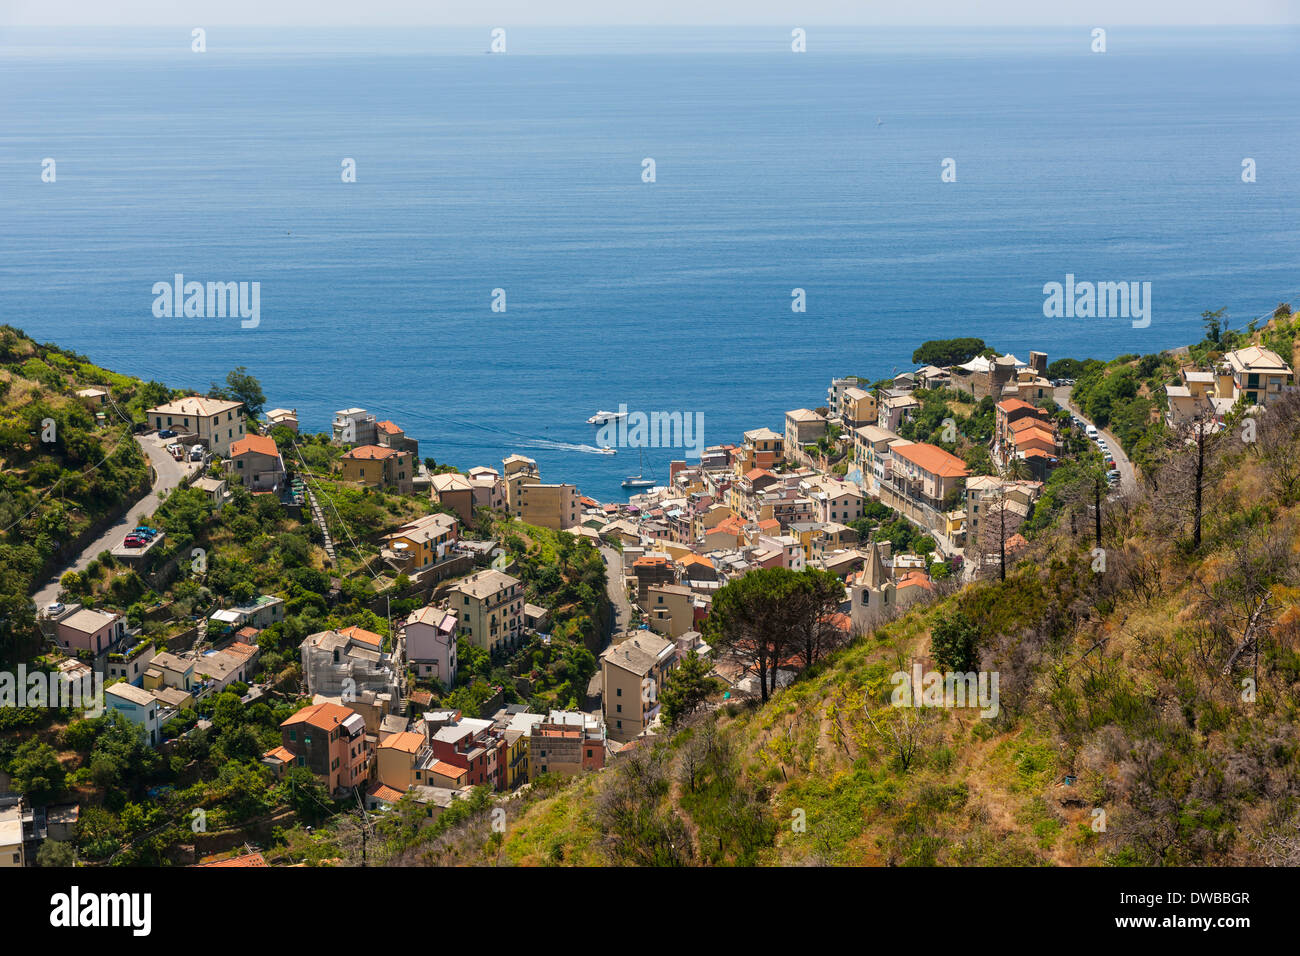 Italy, Liguria, Cinque Terre, Riomaggiore Stock Photo